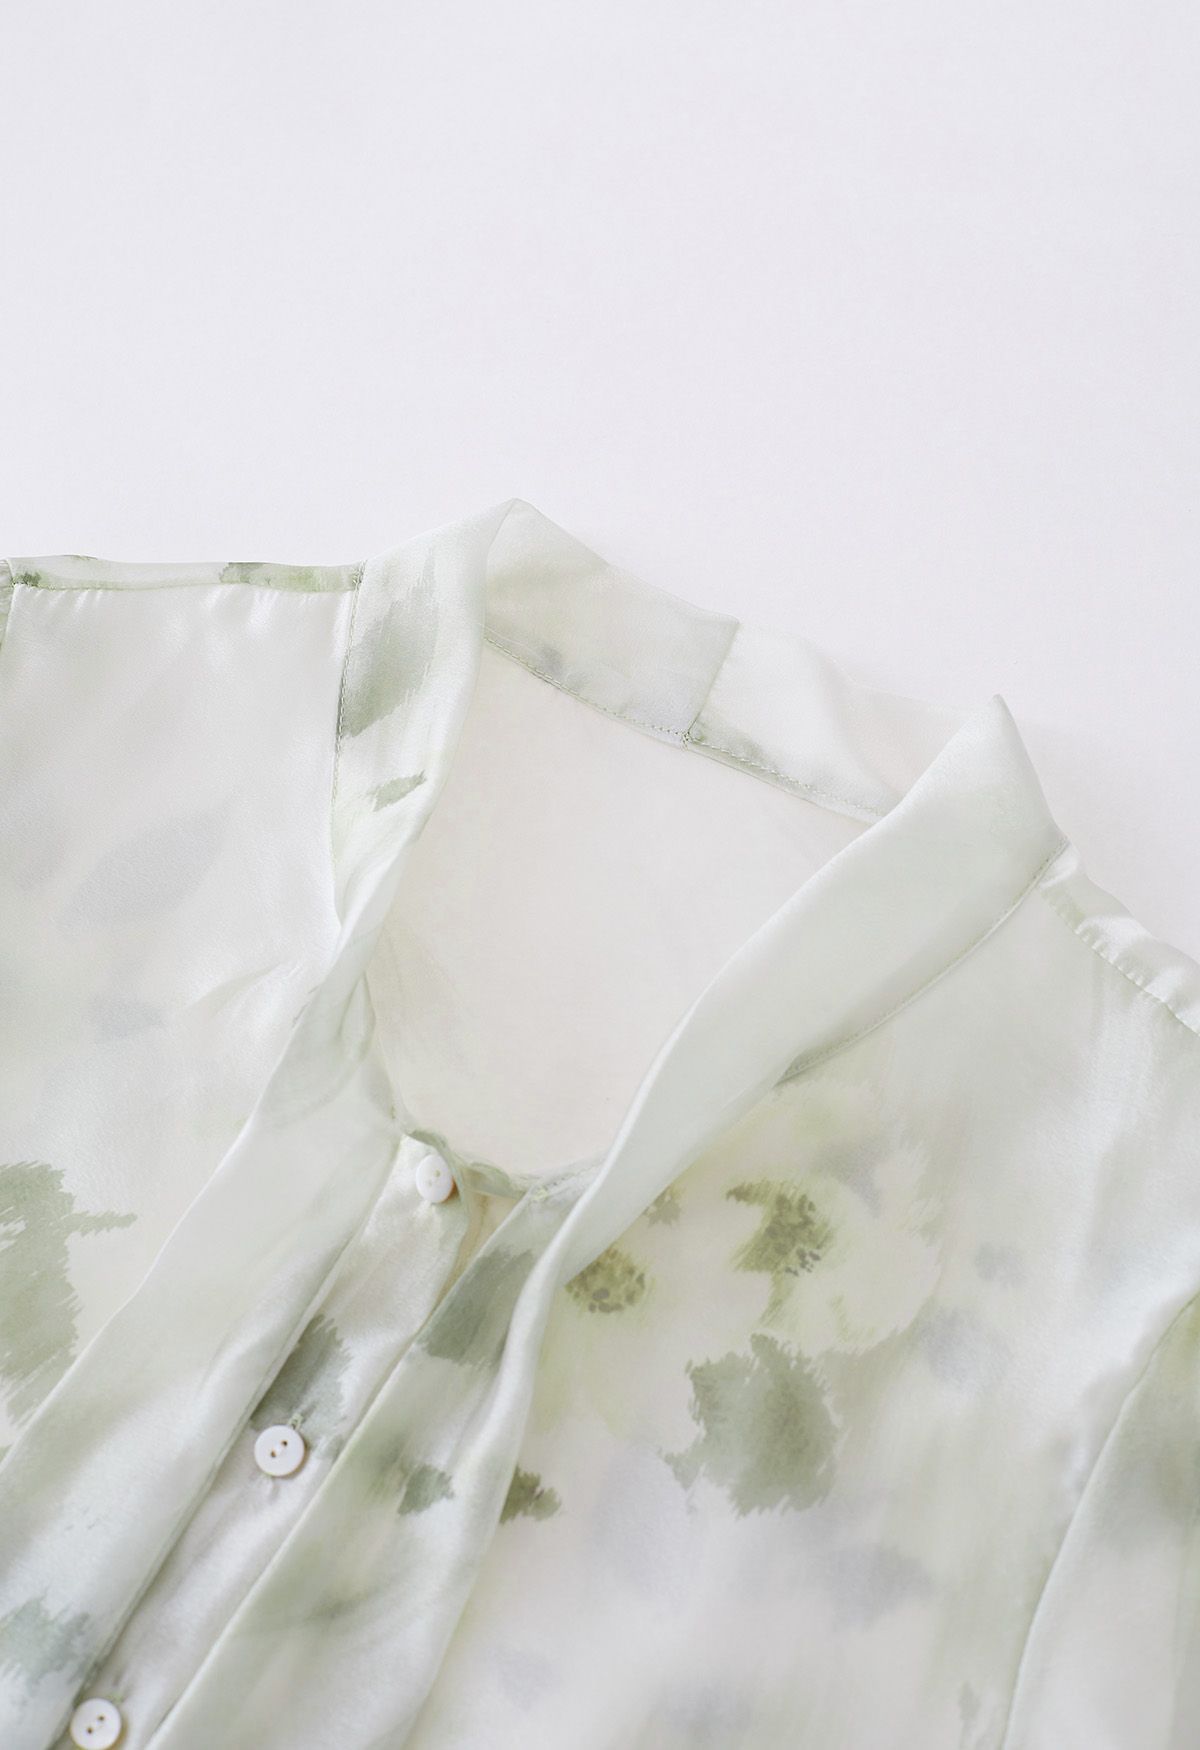 Transparentes Hemd mit Schleife und Aquarellblumenmuster in Grün